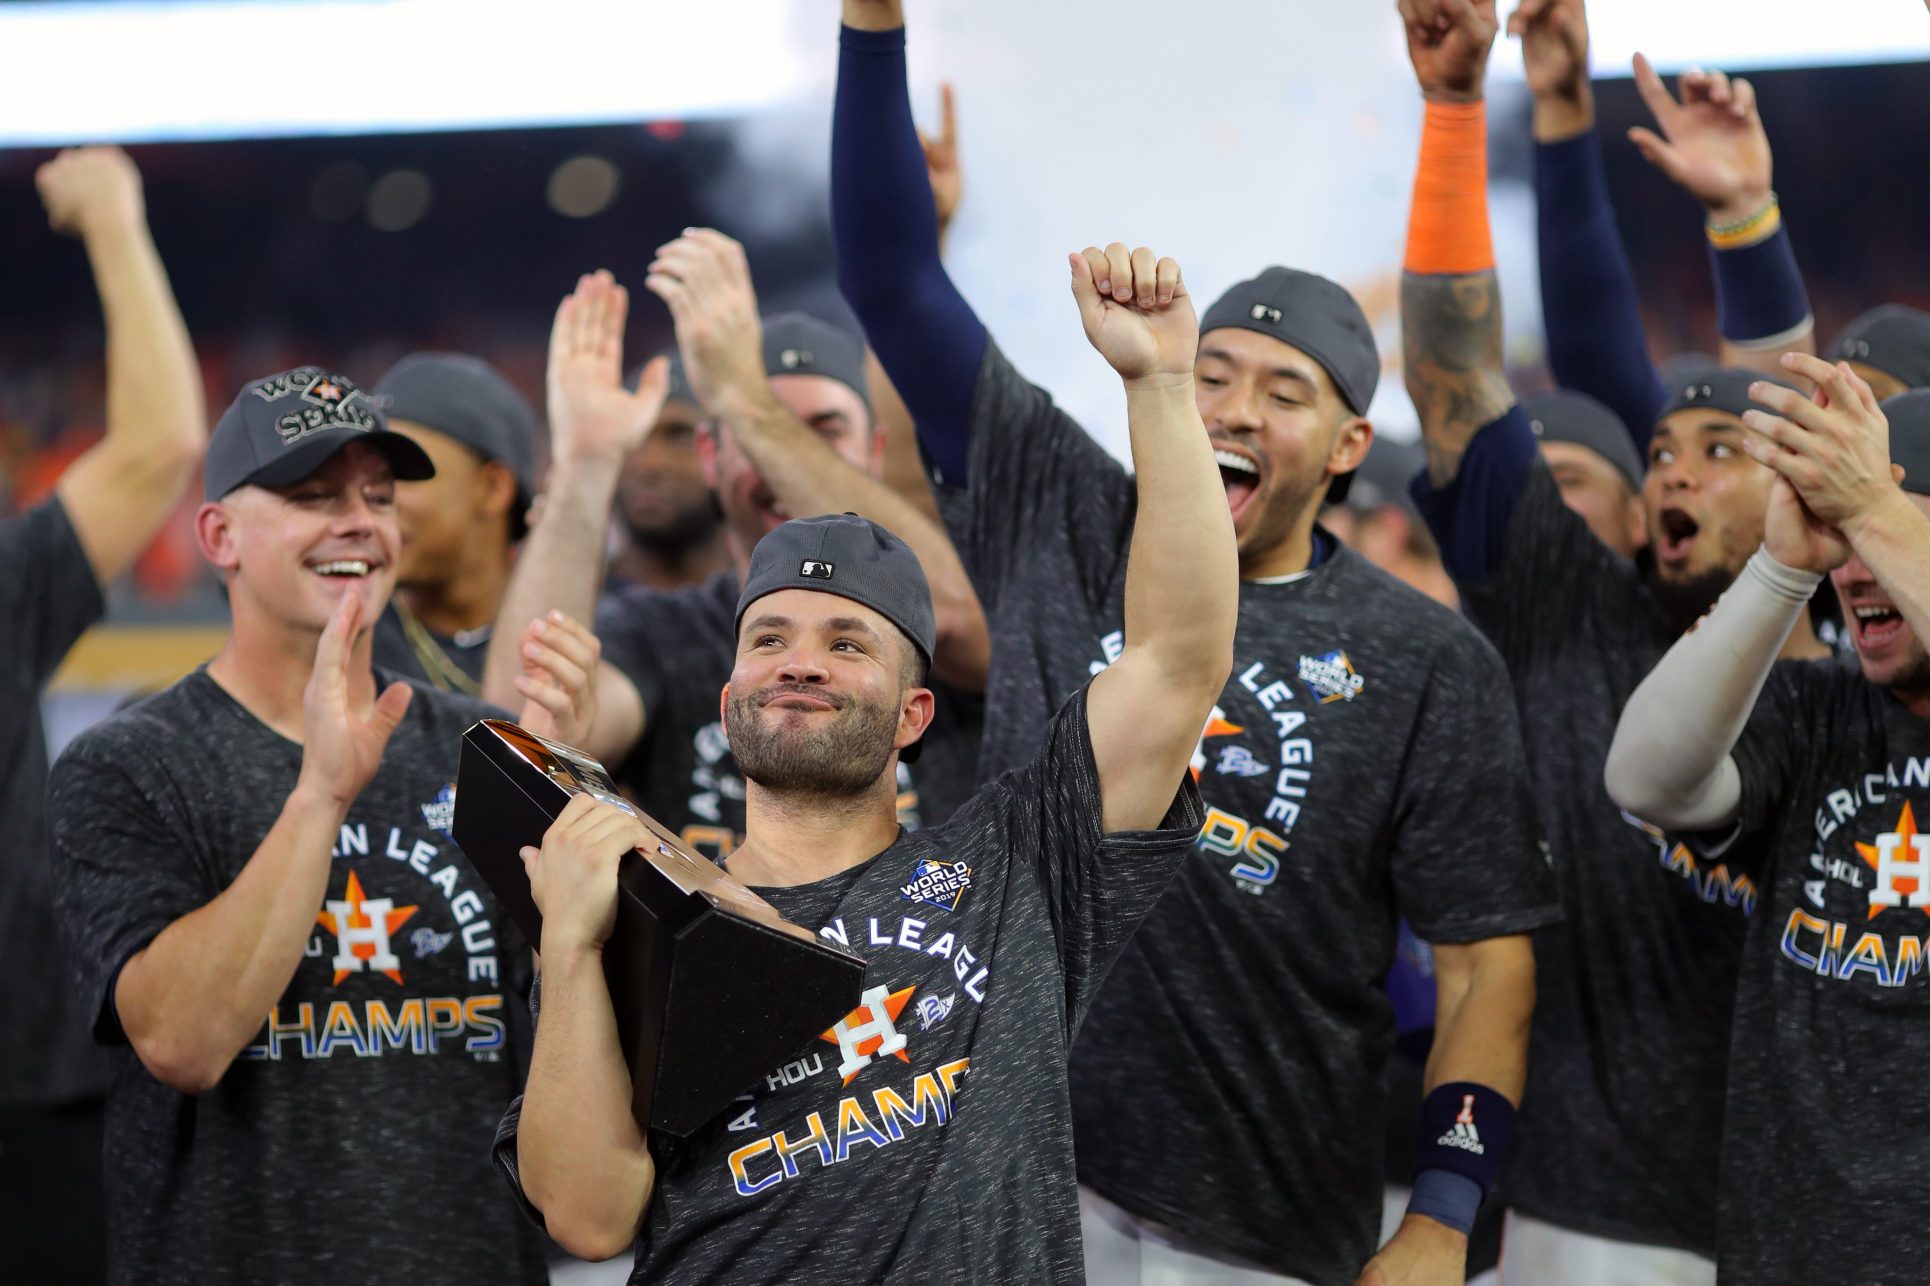 Tras eliminar a Yanquis, Astros sueñan con ganar la Serie Mundial